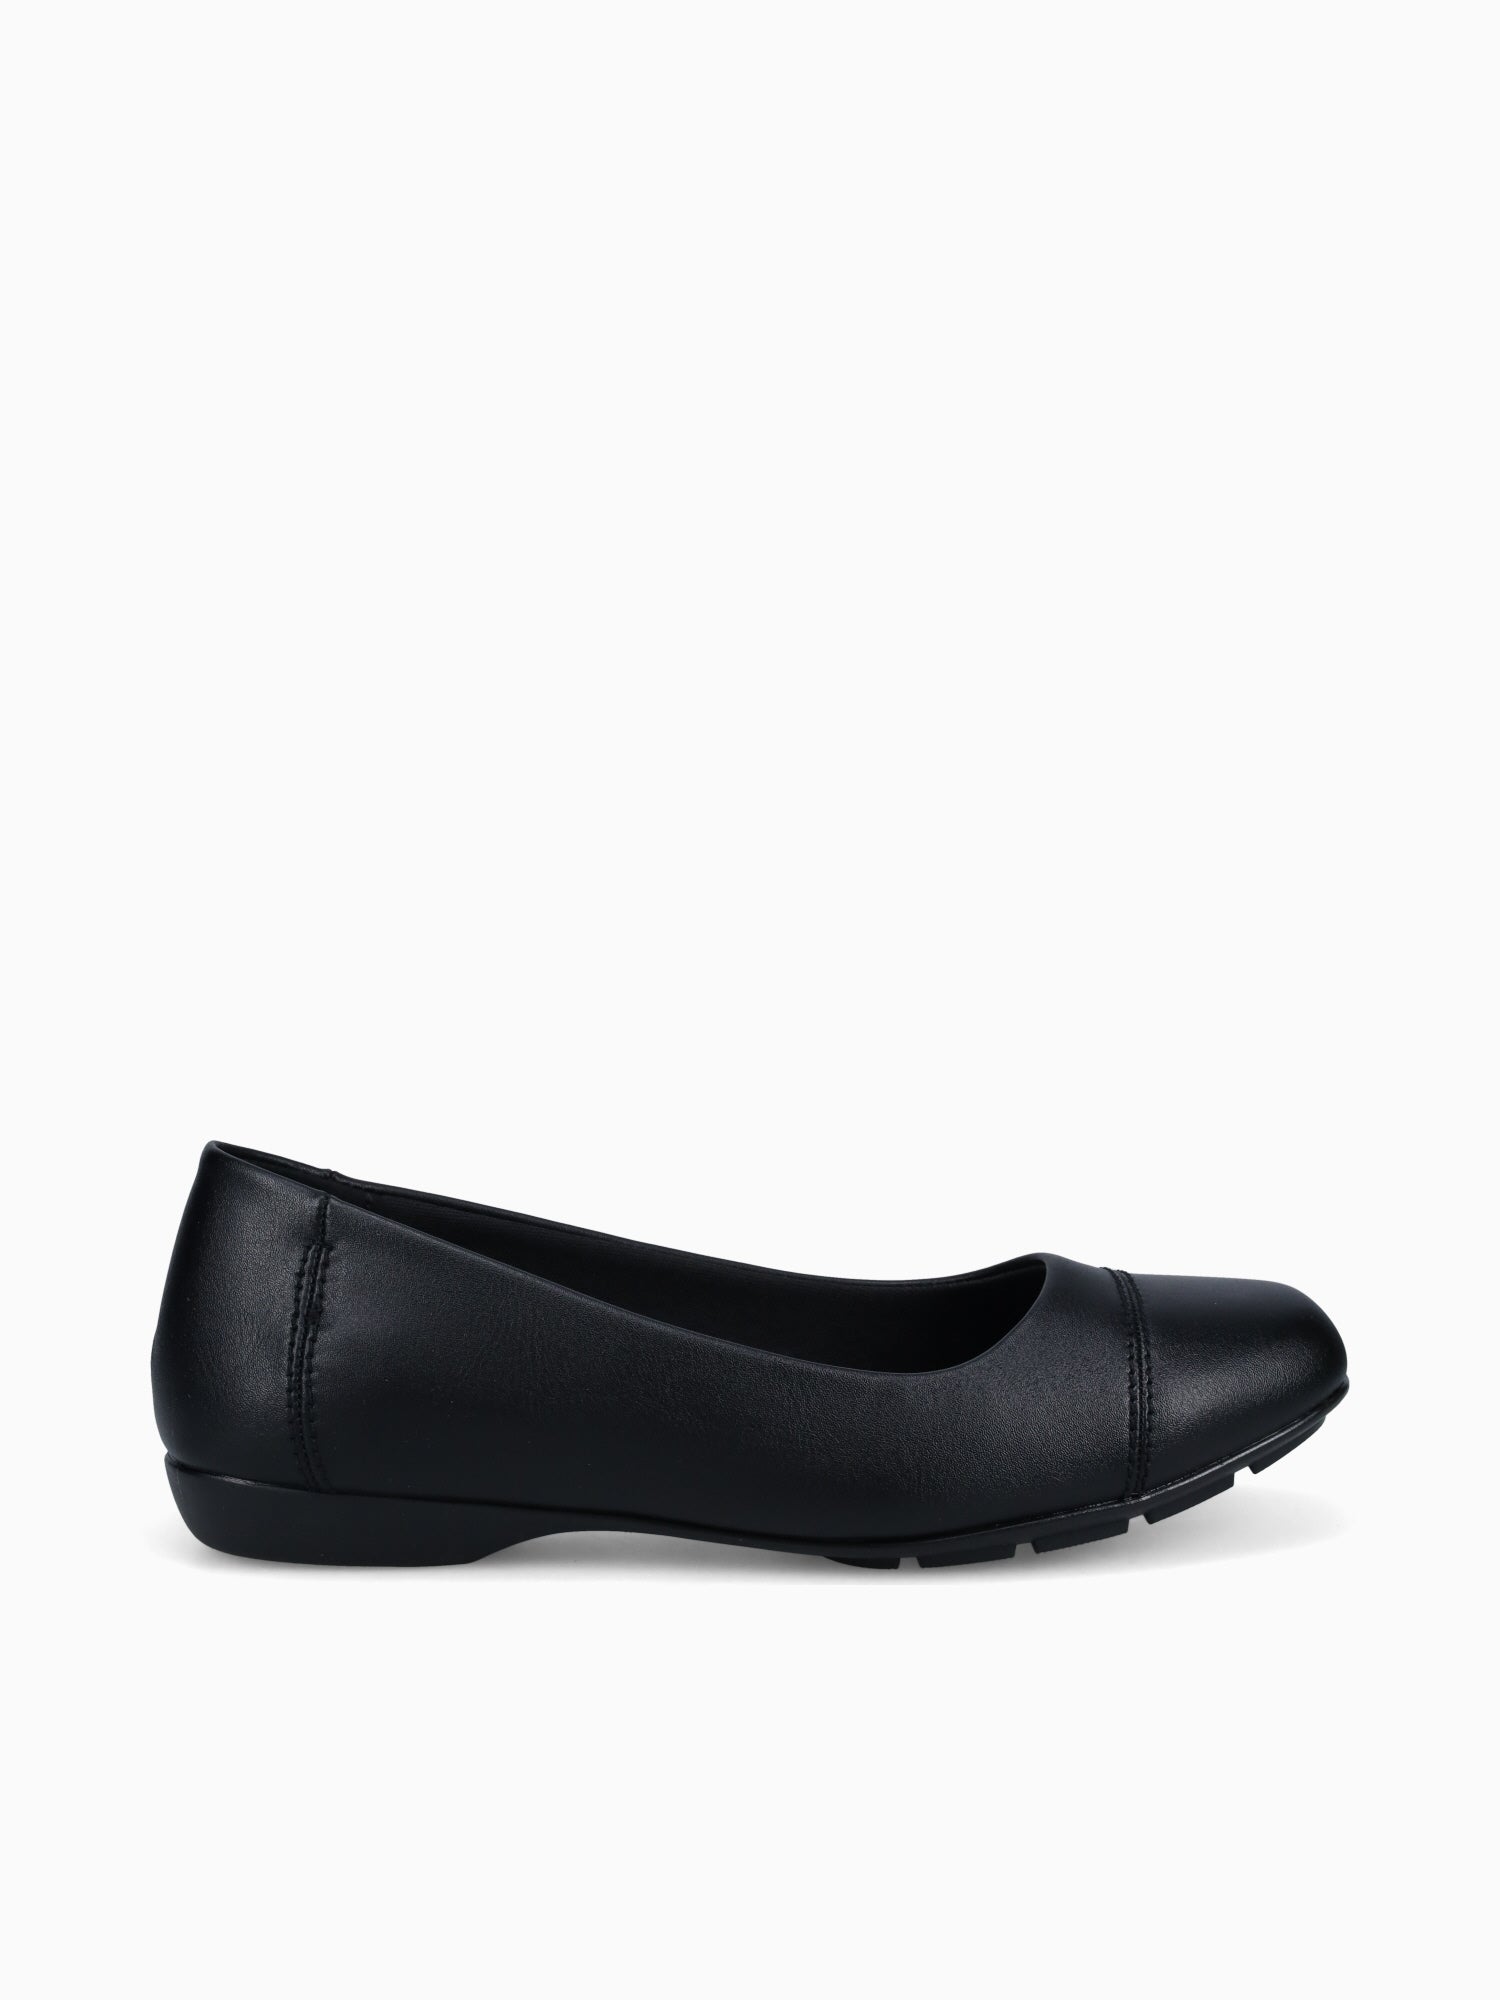 Dreima 8012 46 Black– BKS Shoes